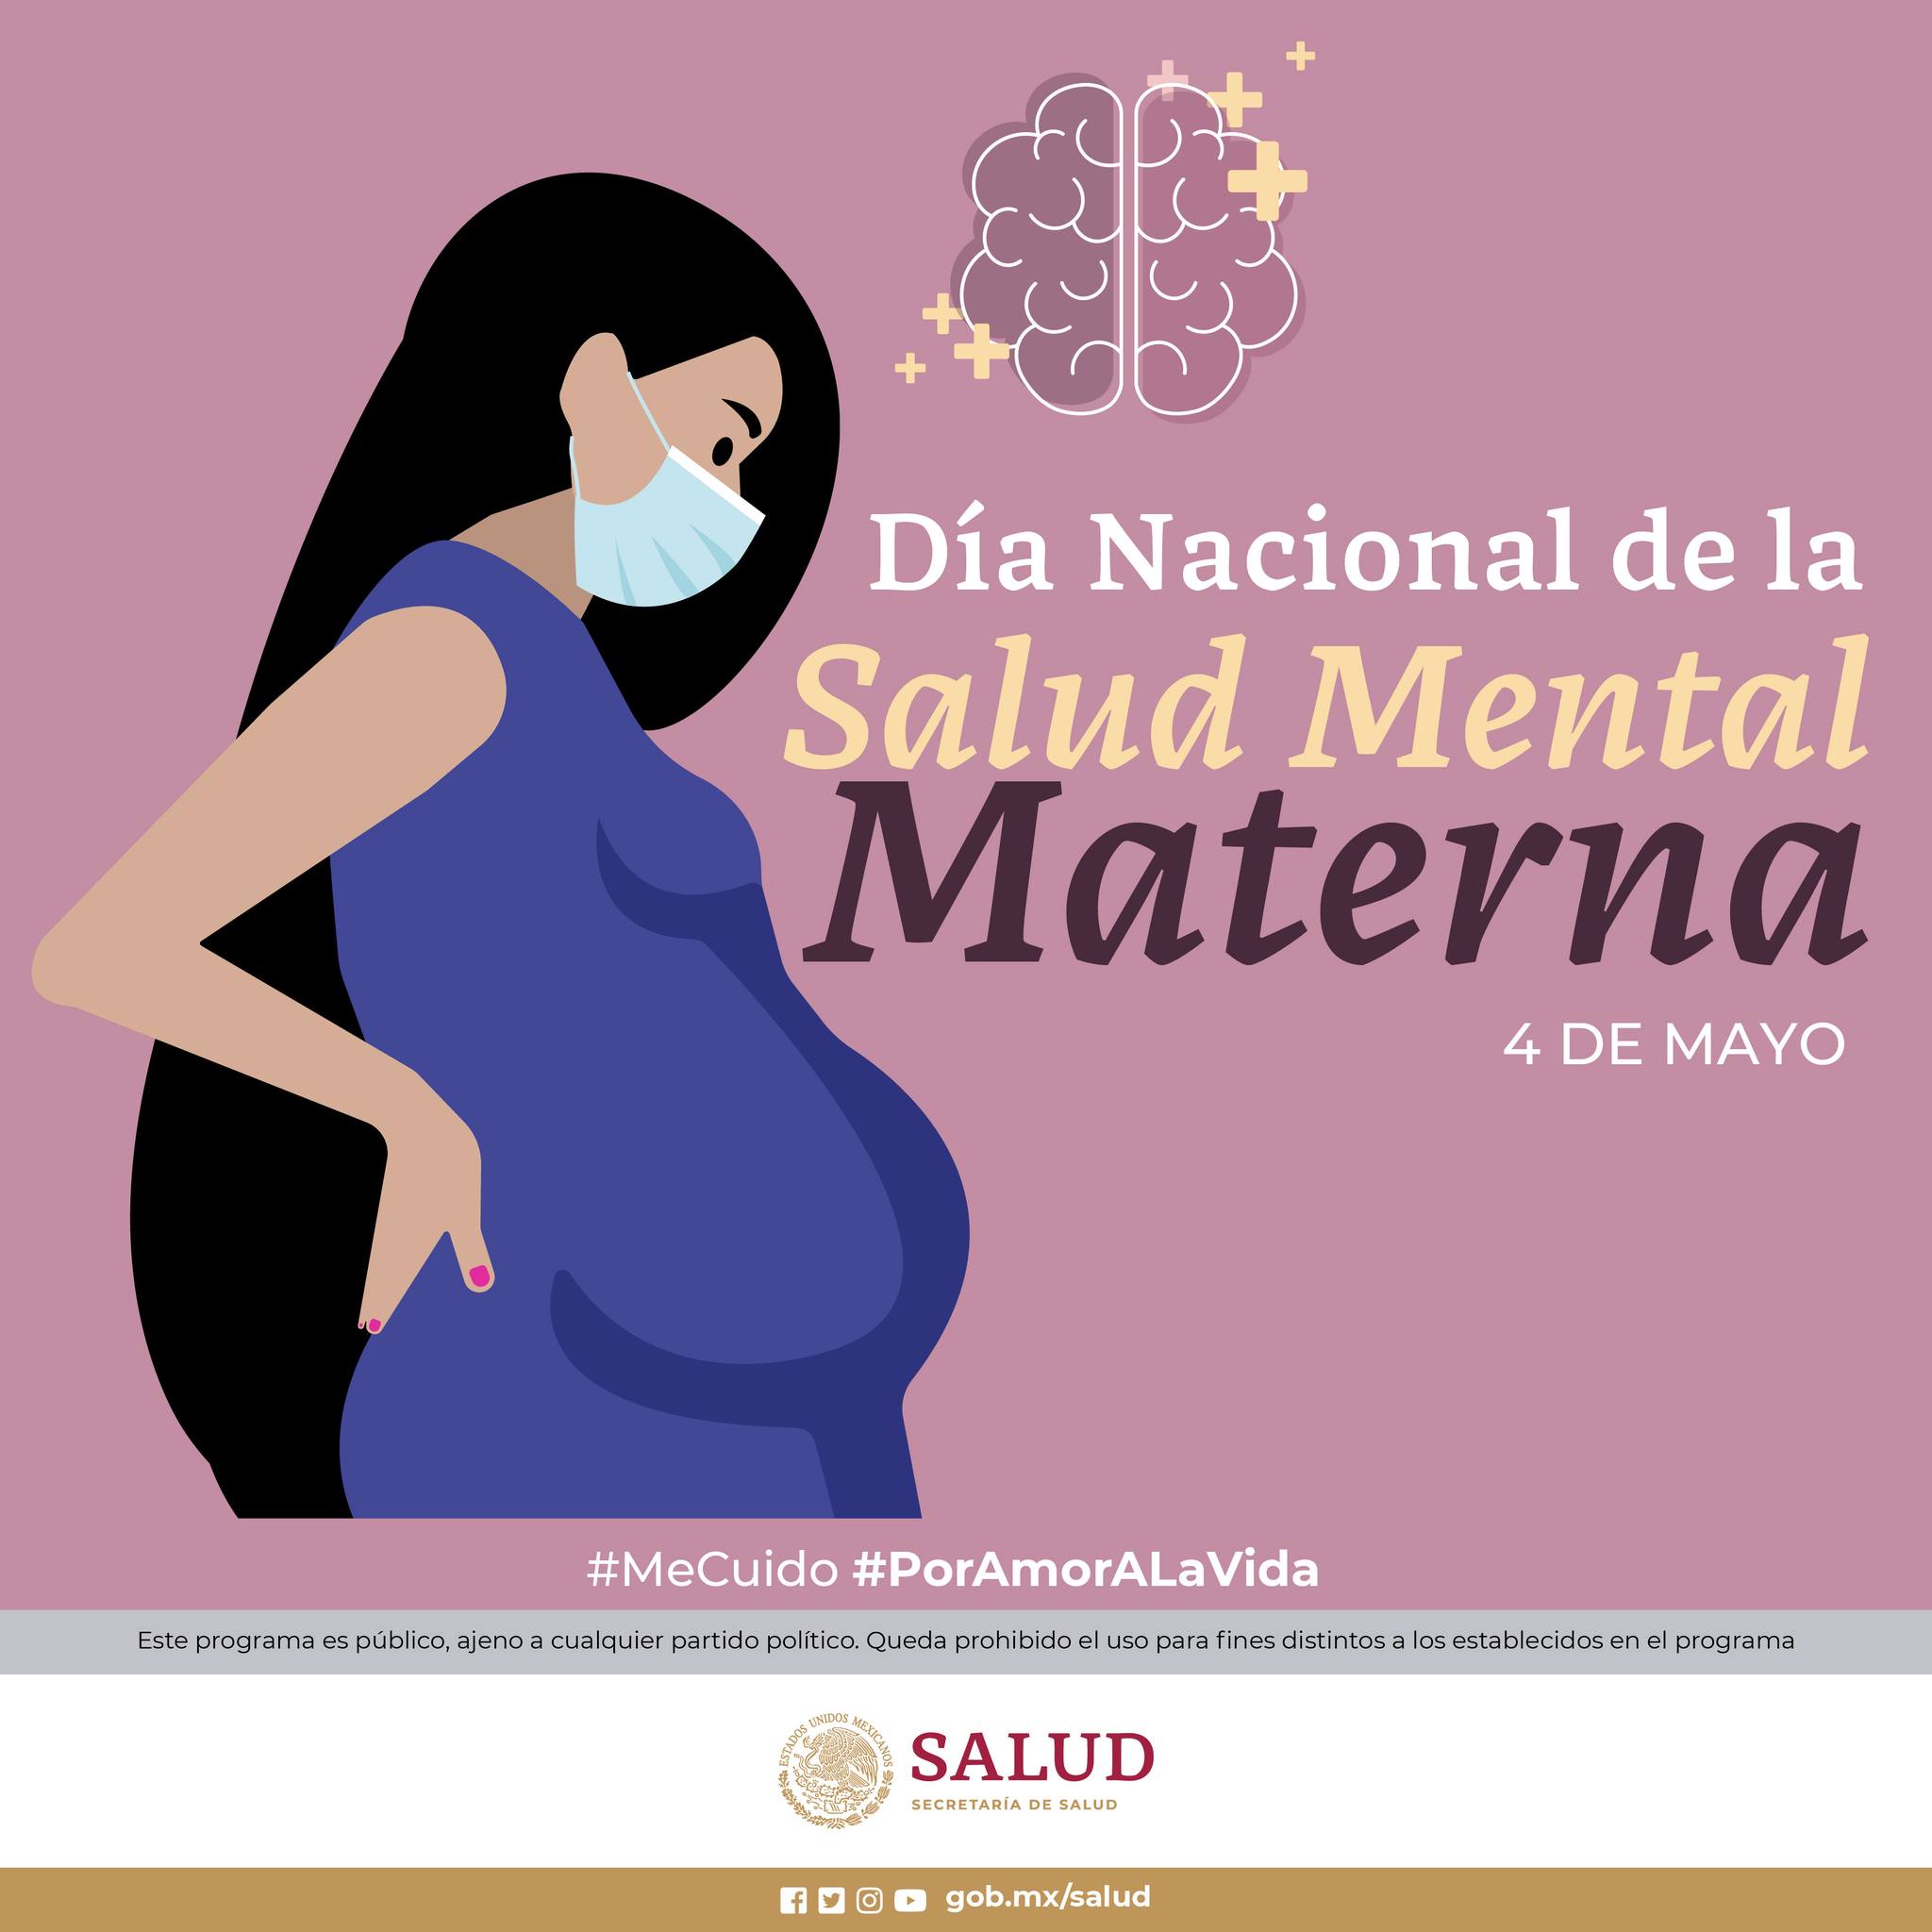 D�a Nacional de la Salud Mental Materna